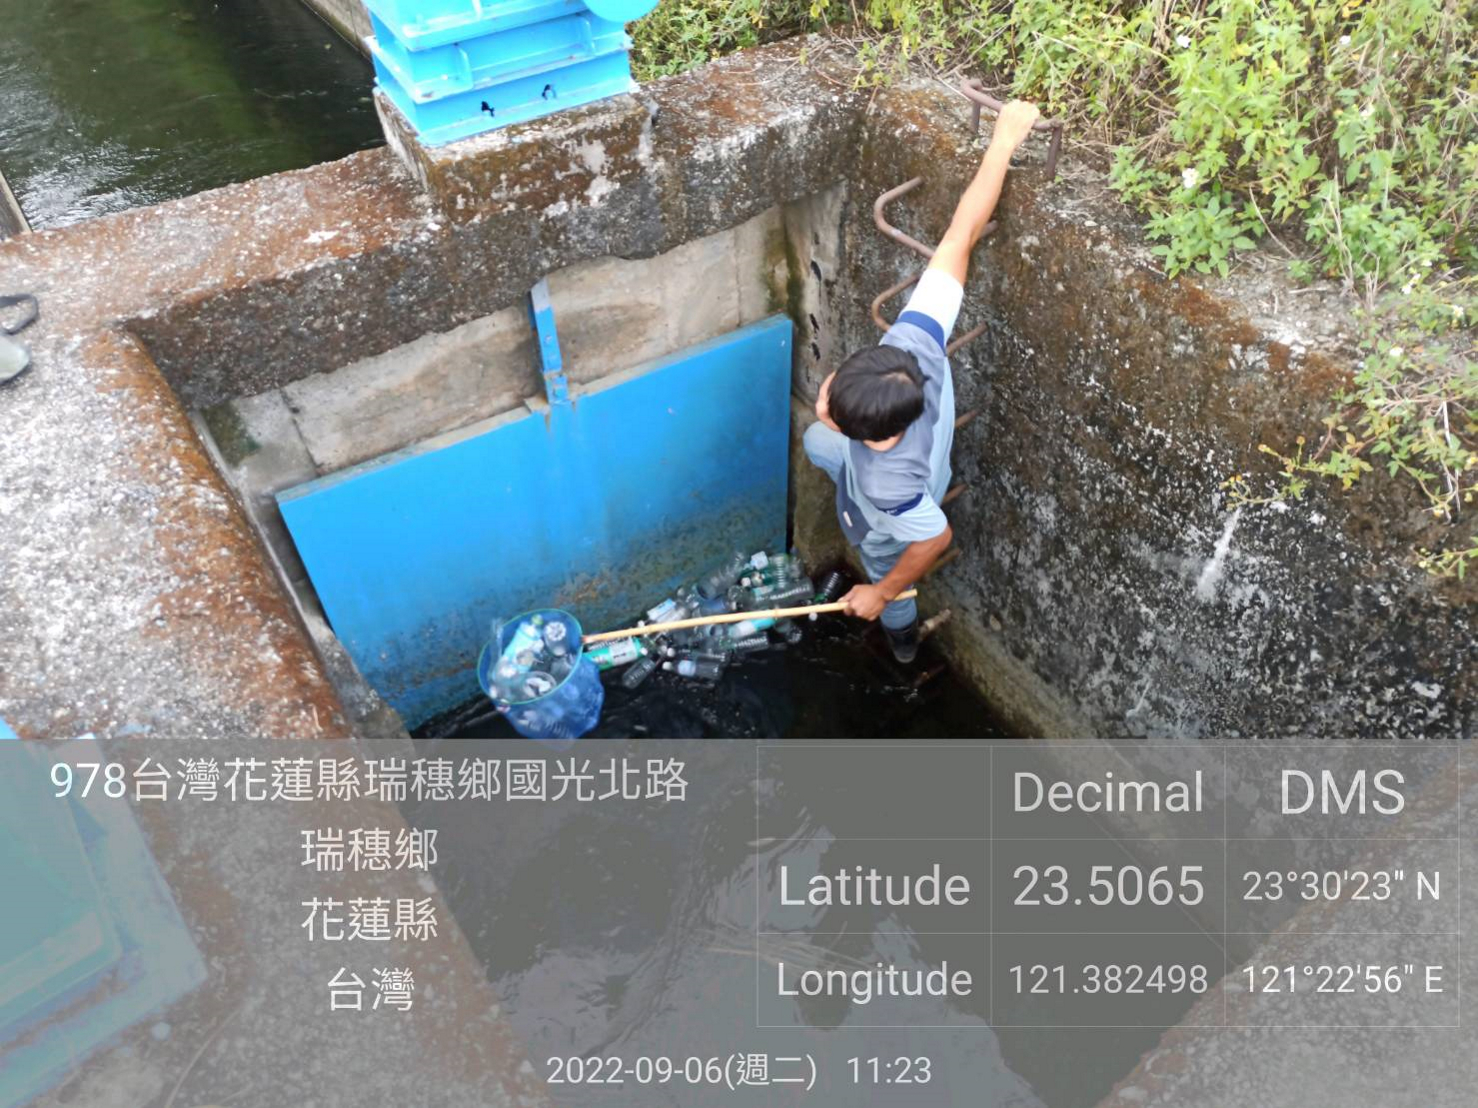 加強攔除地面水體的垃圾 達成清淨河面之目標6